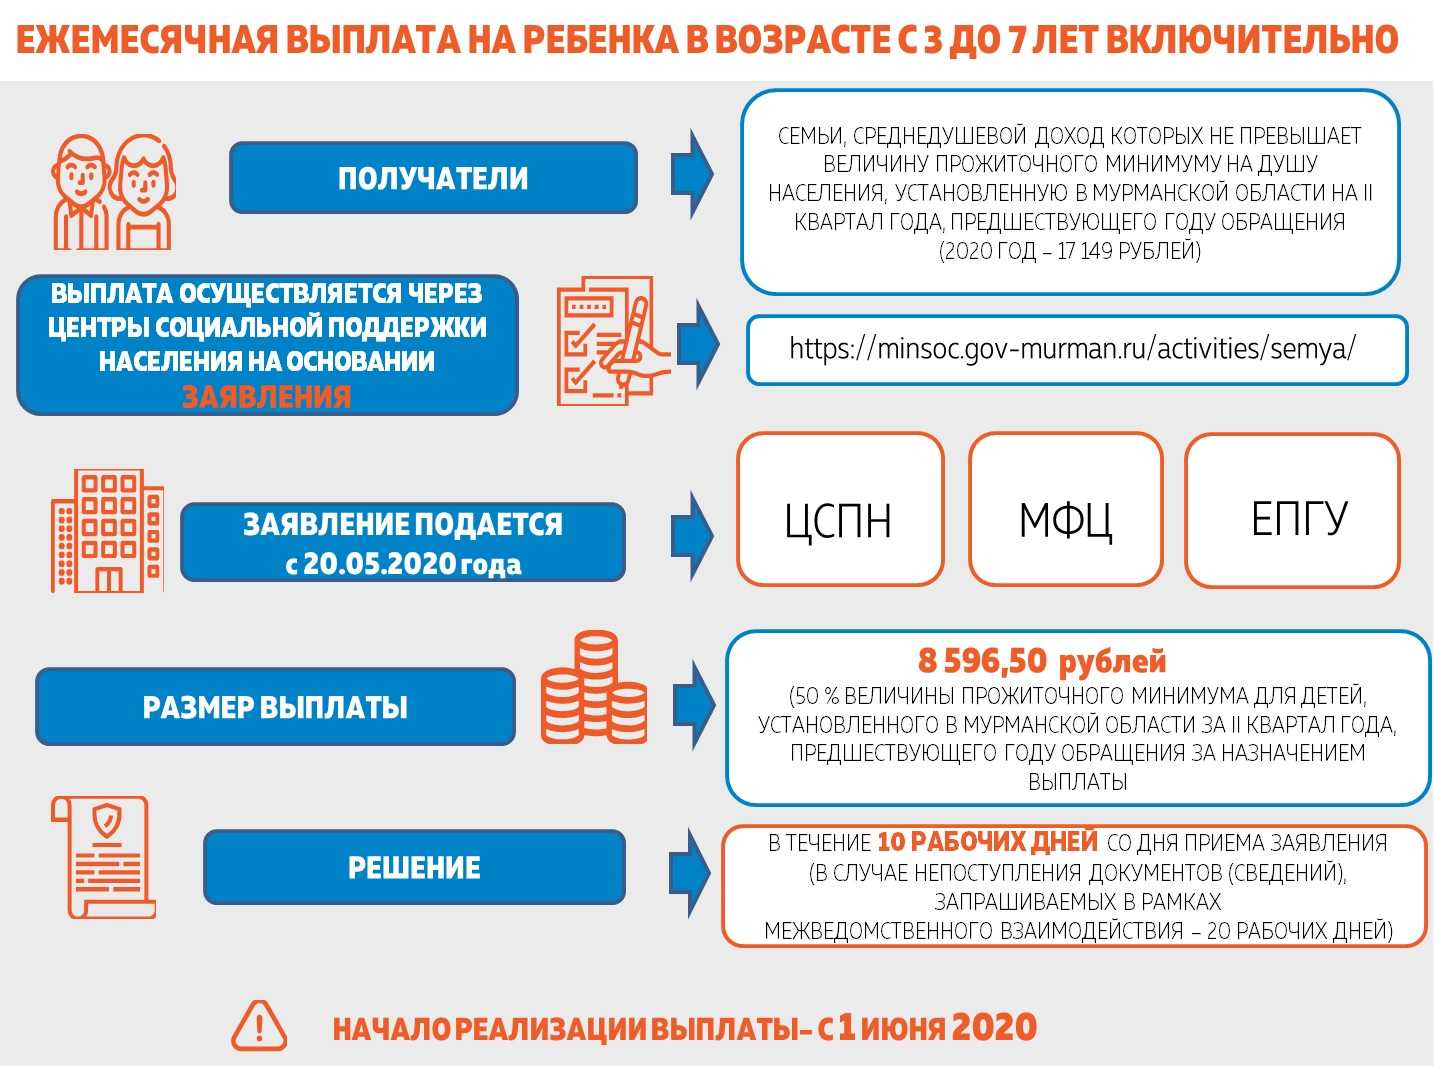 Что такое едк? как получить ежемесячную денежную компенсацию? :: businessman.ru